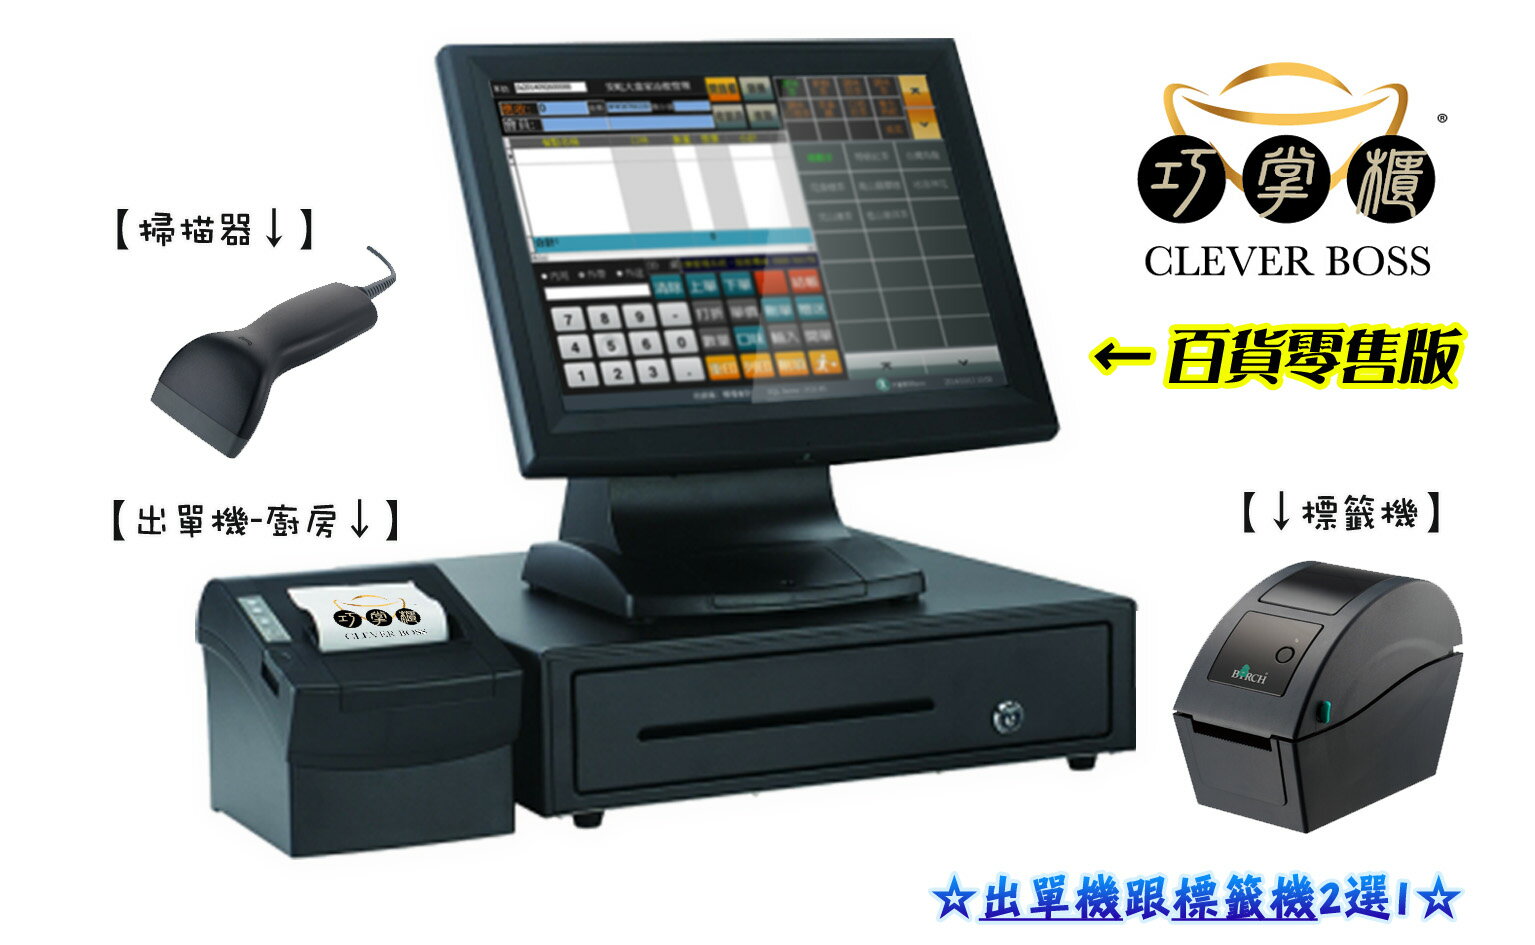 百貨零售 pos系統 主機+錢櫃+軟體+出單機+掃描器